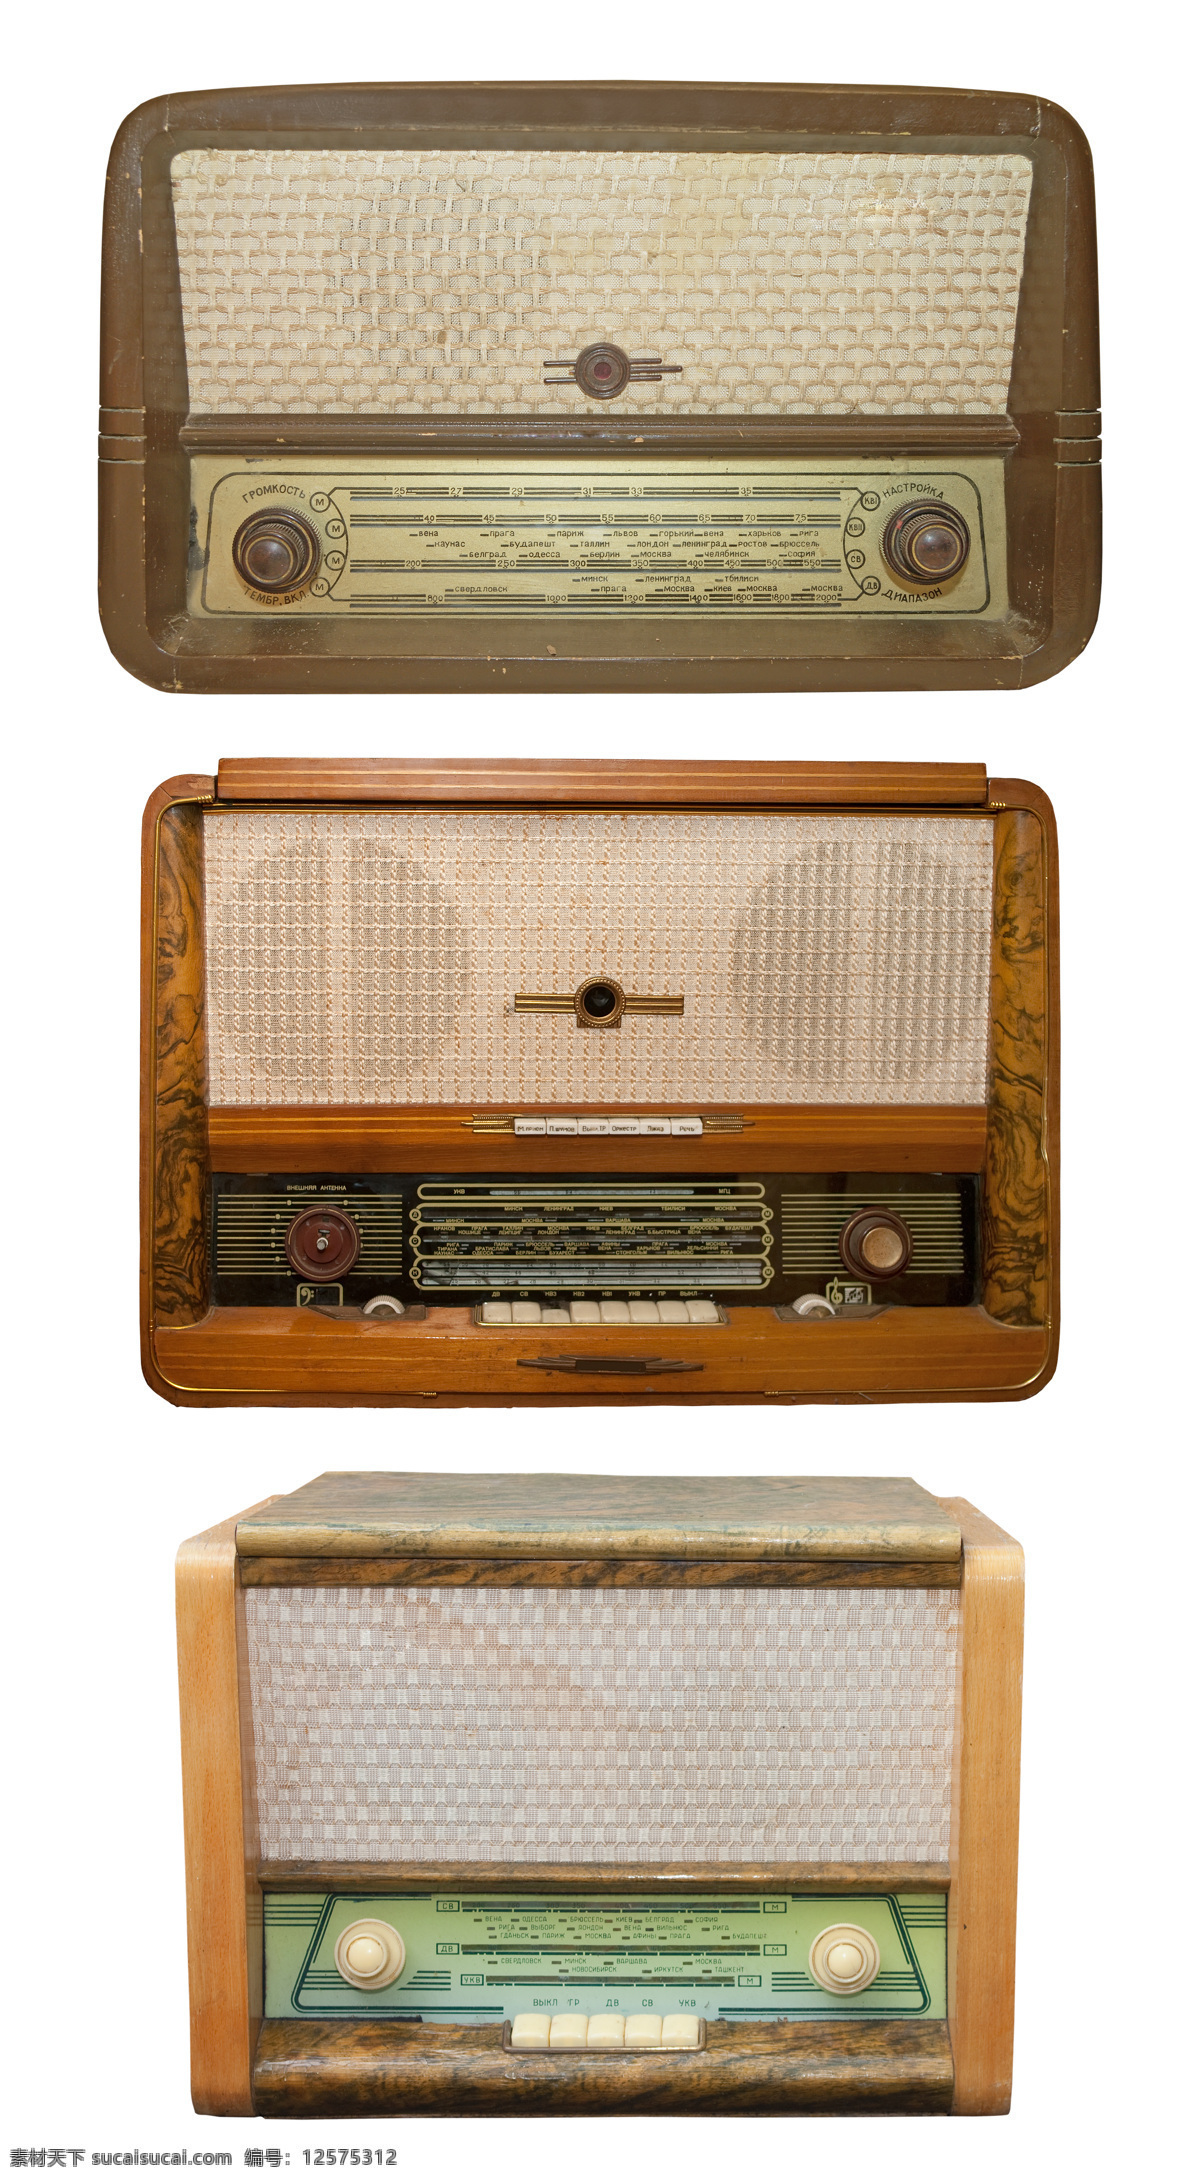 老式 收音机 摄影图片 音乐器材 音乐设备 收音机摄影 音乐收听 家具电器 生活百科 白色